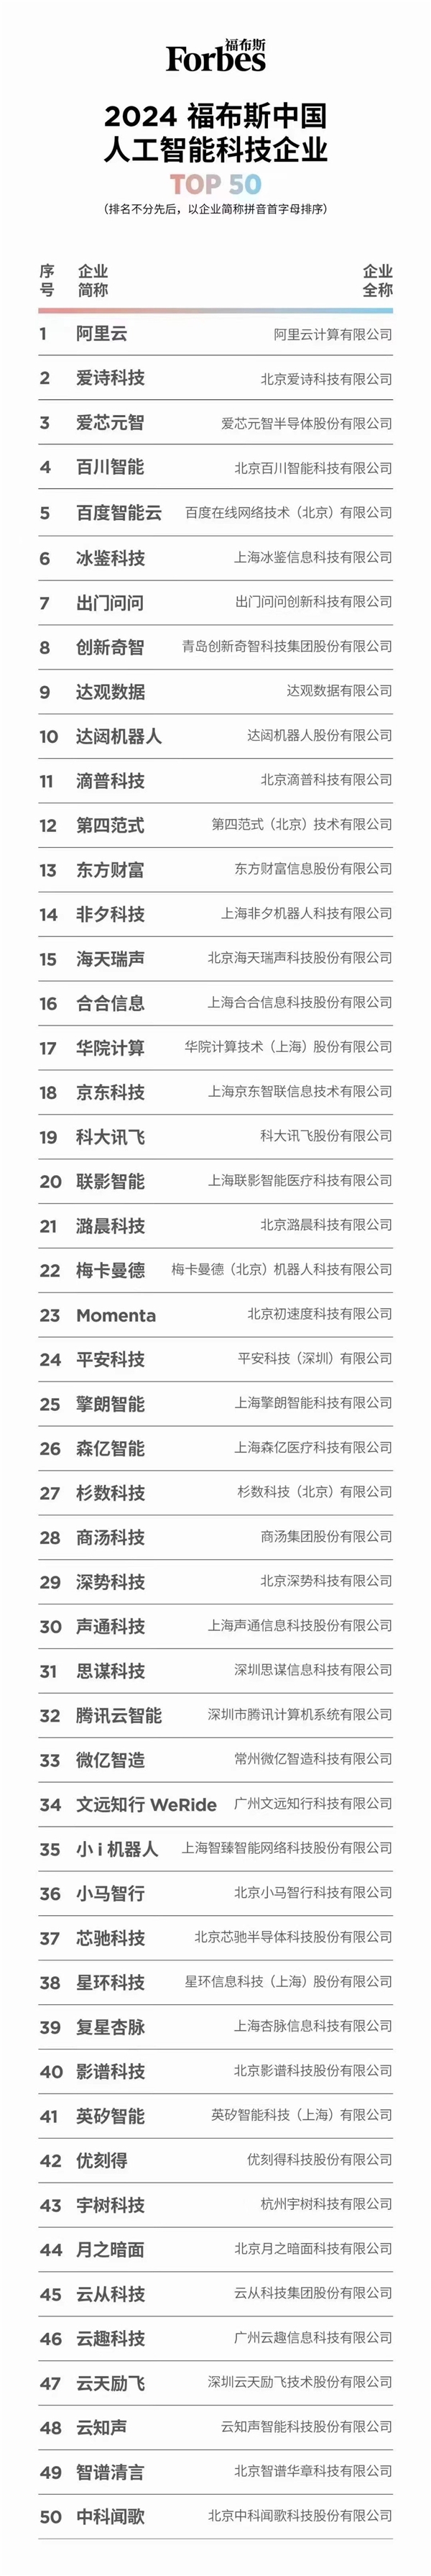 第四范式(6682.HK)入选“2024福布斯中国人工智能科技企业”